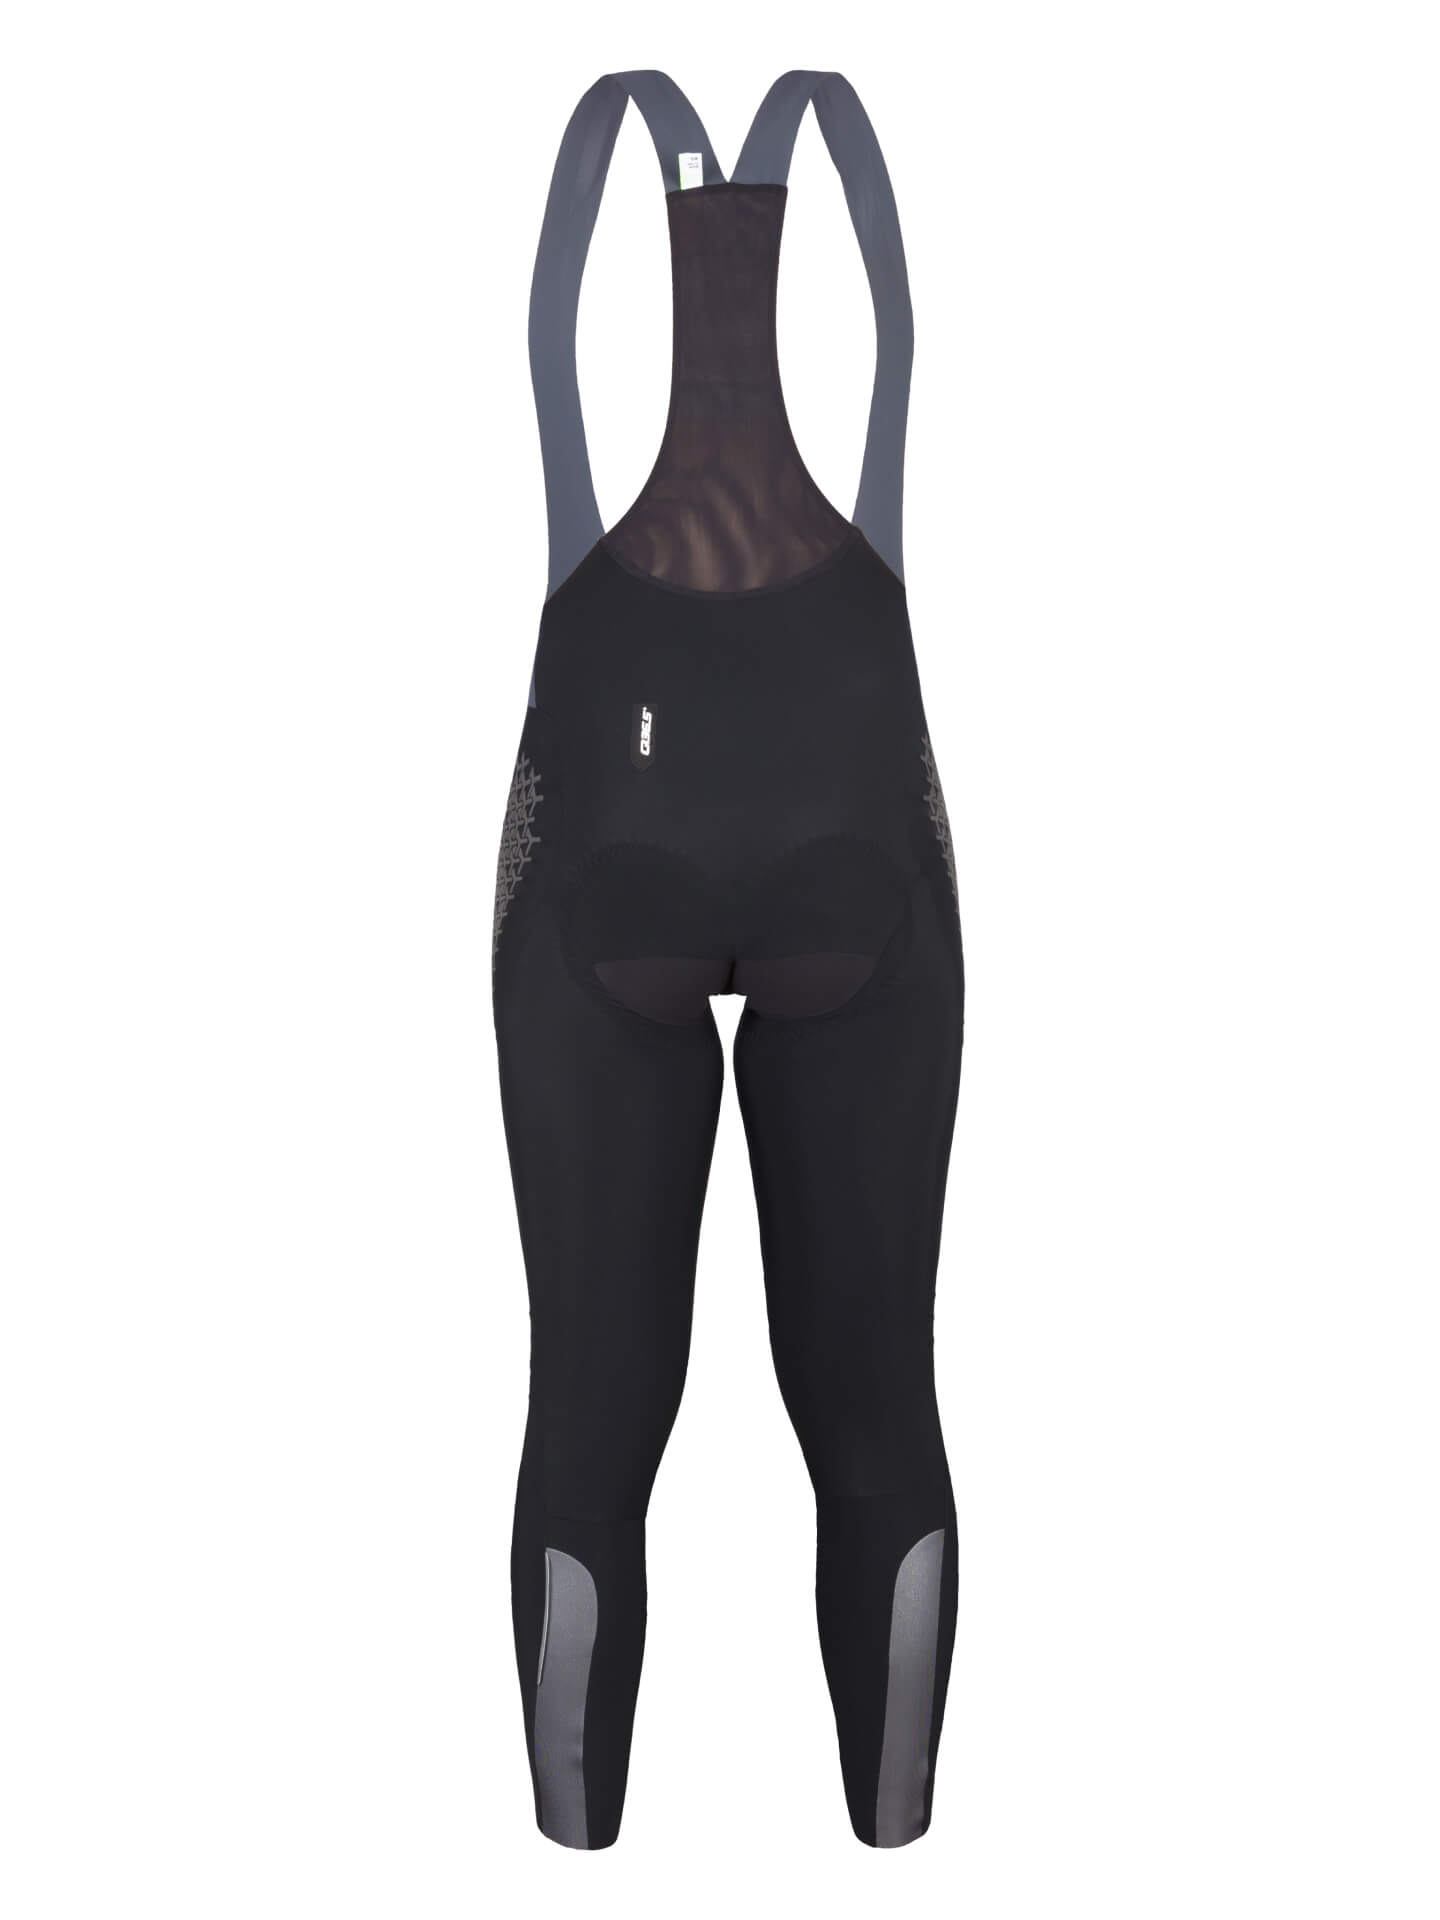 https://cdn.tincx.de/media/54/cf/24/1697096422/Q365-grid-skin-winter-bib-tights-women-black.jpeg